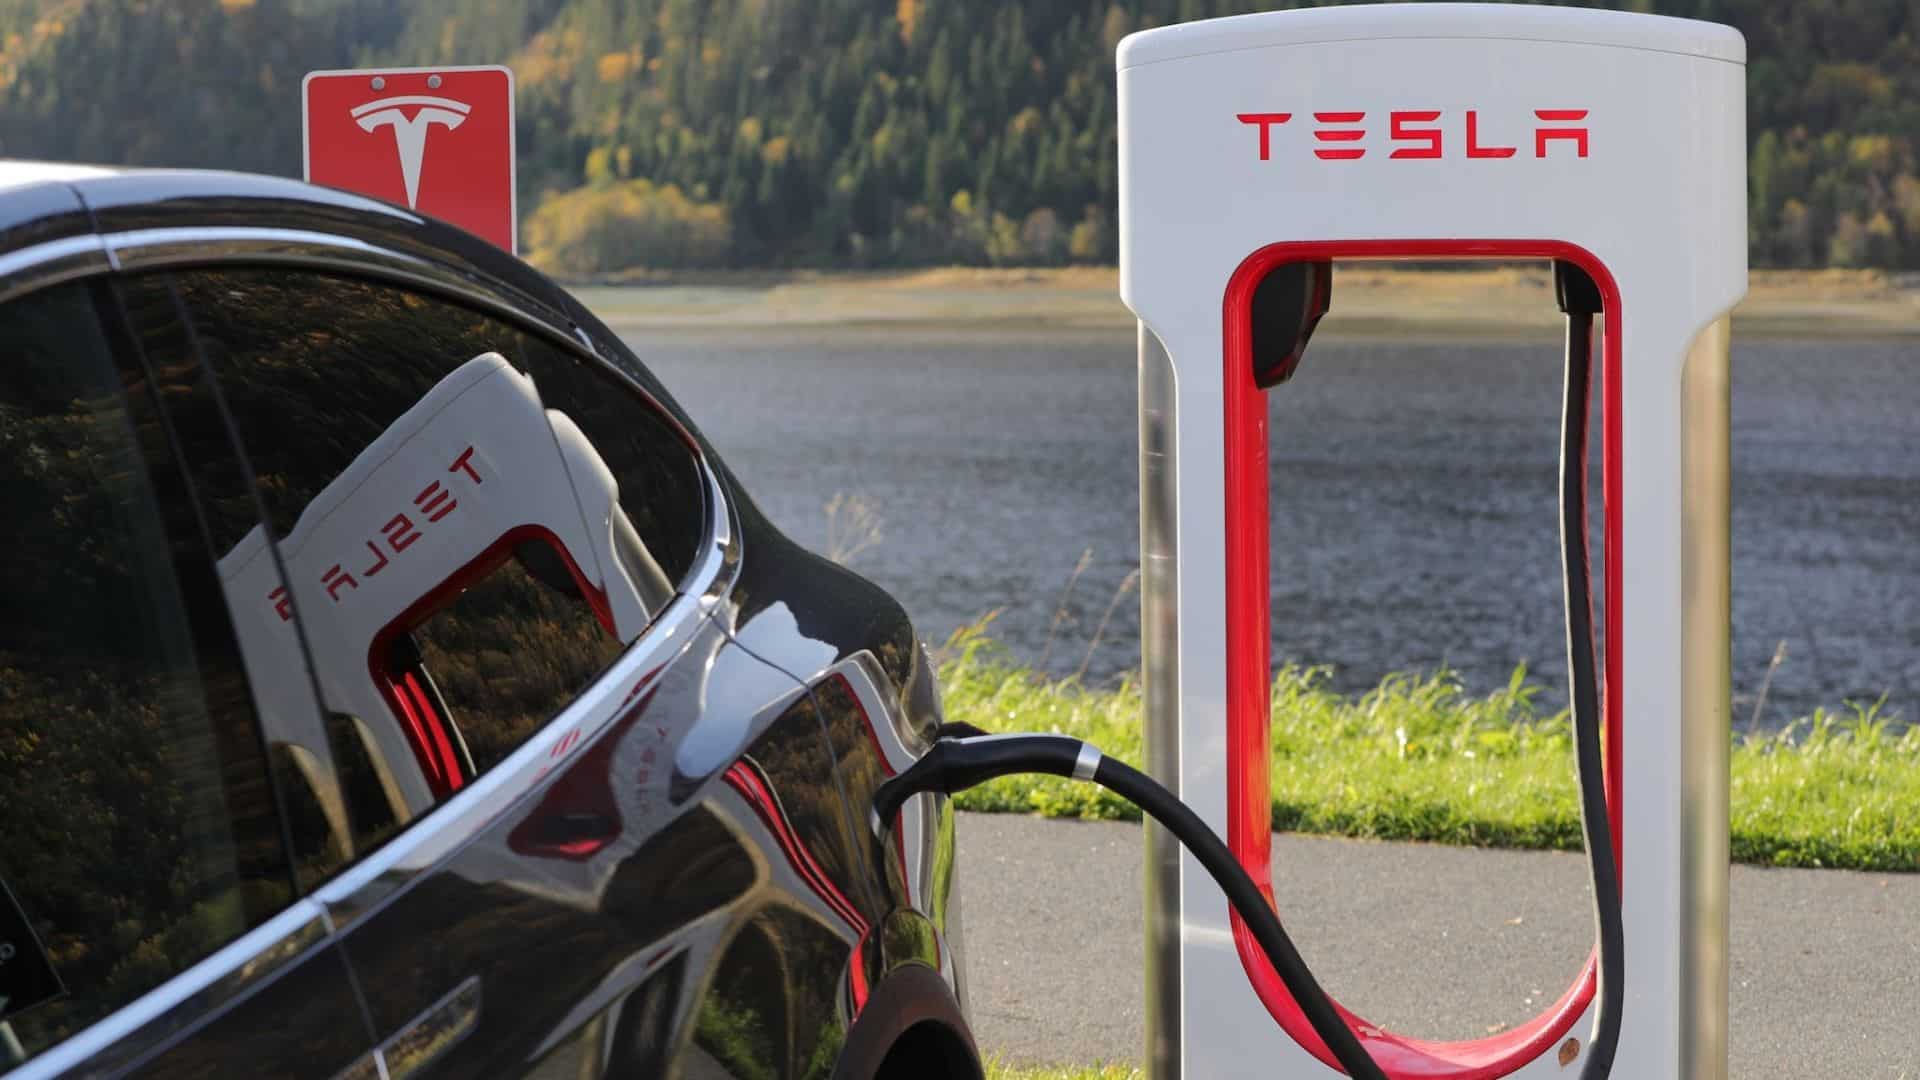 Oggi è gratis per tutti la ricarica ai Supercharger Tesla